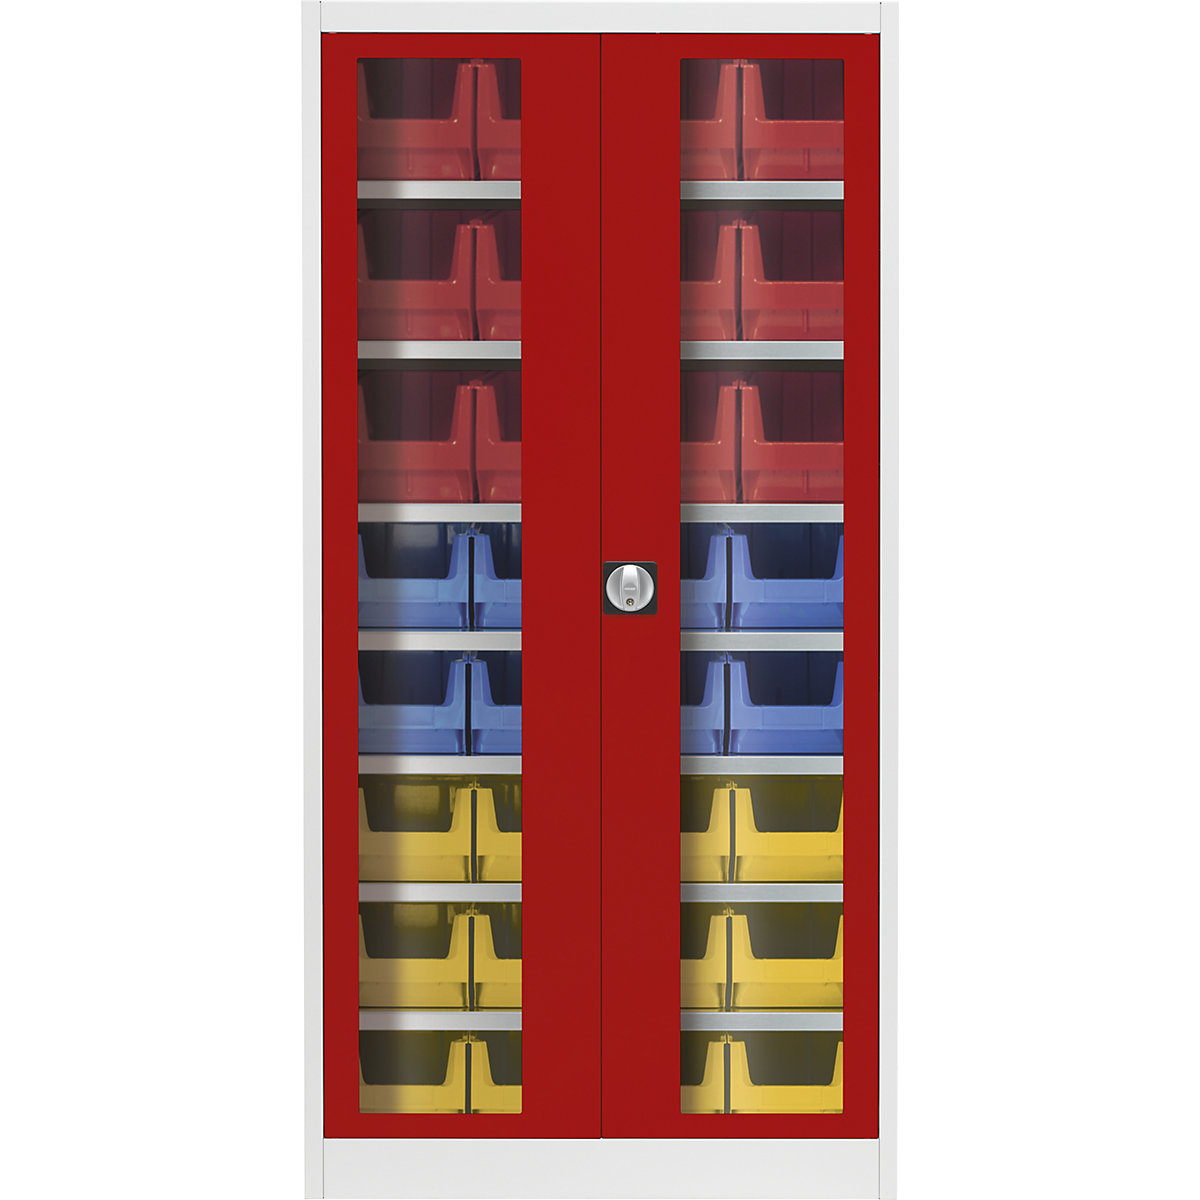 Skriňa s krídlovými dverami s priehľadným okienkom – mauser, s 32 prepravkami s viditeľným obsahom, svetlošedá / ohnivo červená-5